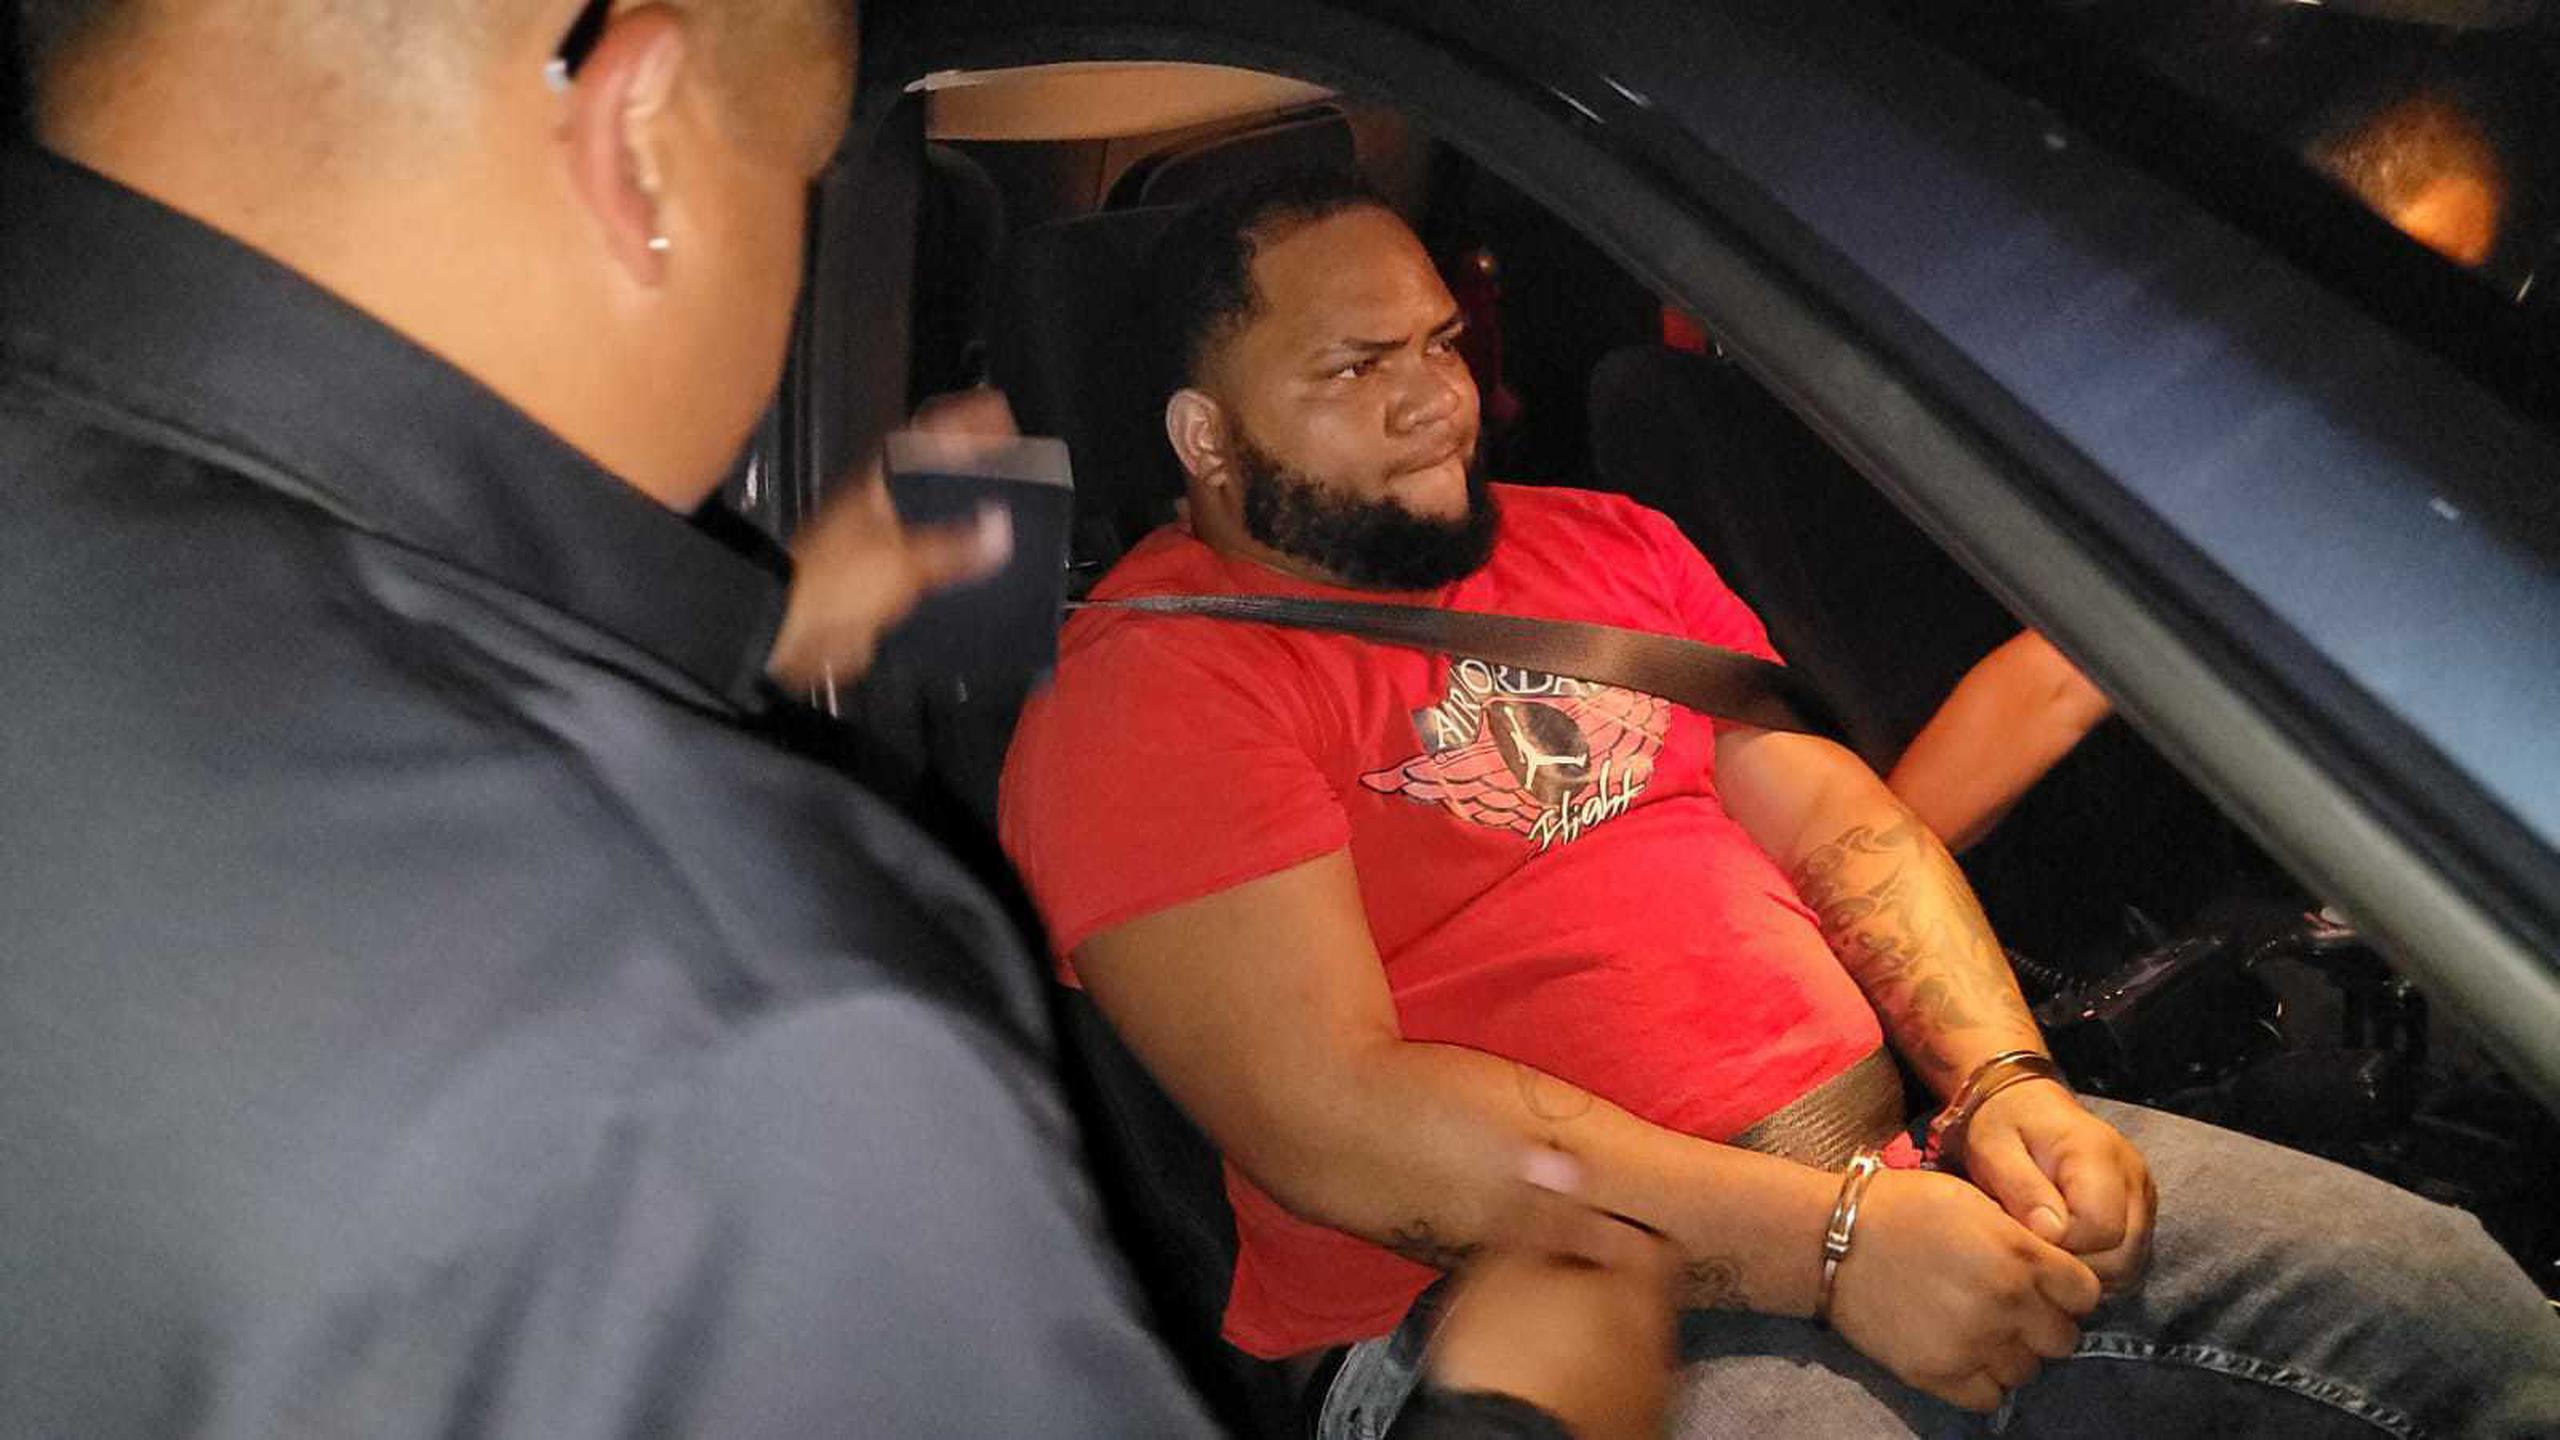 Wilfredo Rivera Vargas, descrito por el Negociado de la Policía como "armero del bajo mundo", fue arrestado por segunda vez este año.